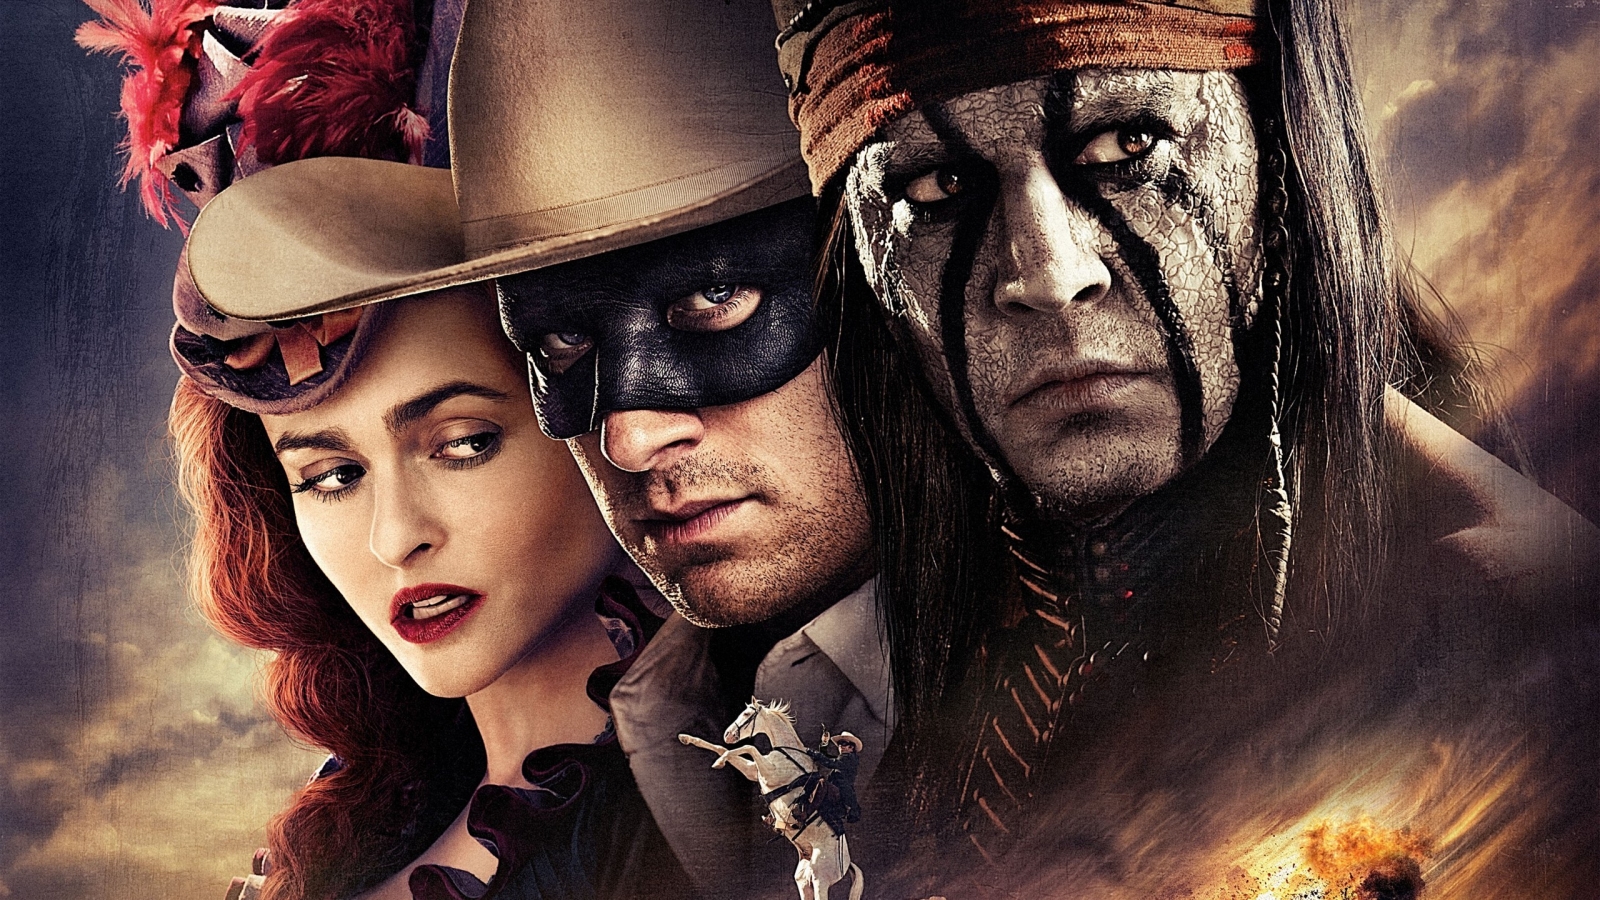 2013 The Lone Ranger Film for 1600 x 900 HDTV resolution